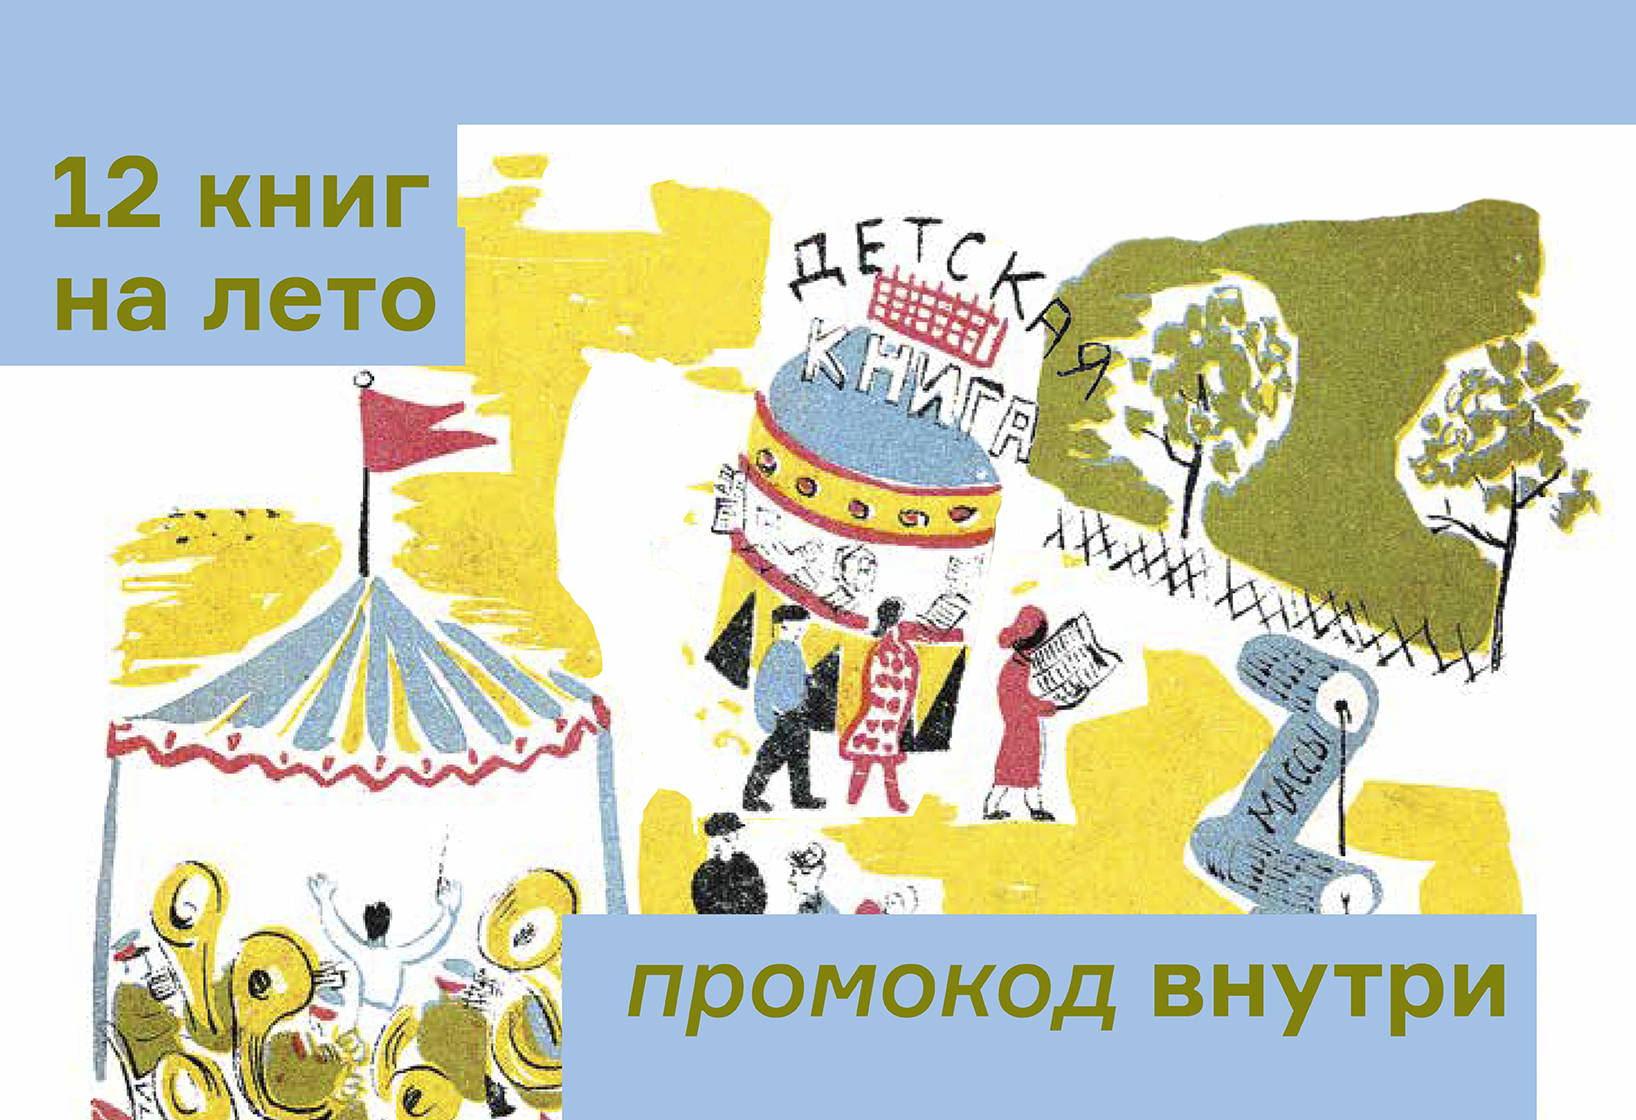 Что читать этим летом: Советы от писателей Иличевского и Ханипаева